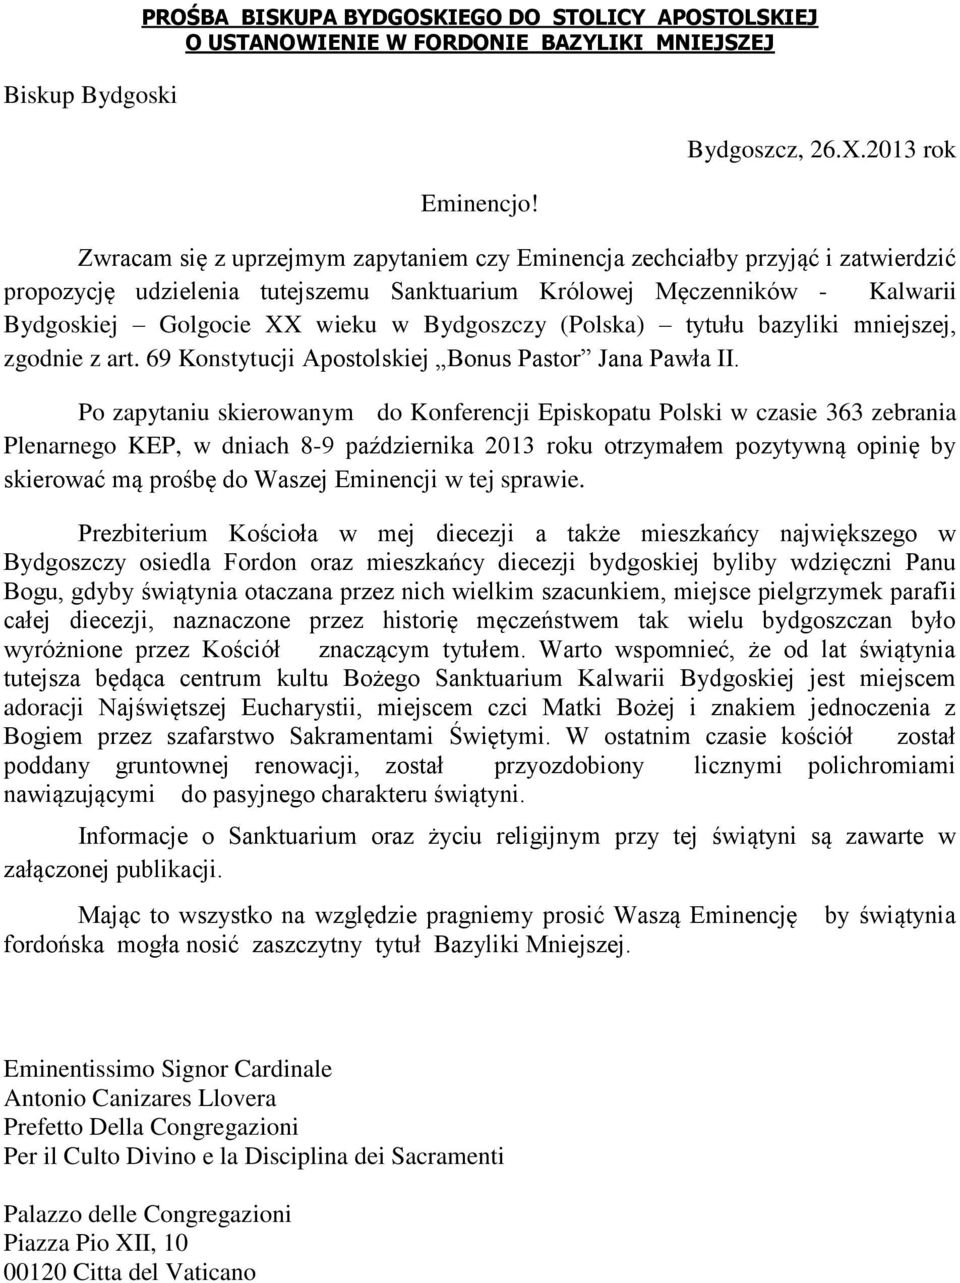 Bydgoszczy (Polska) tytułu bazyliki mniejszej, zgodnie z art. 69 Konstytucji Apostolskiej Bonus Pastor Jana Pawła II.